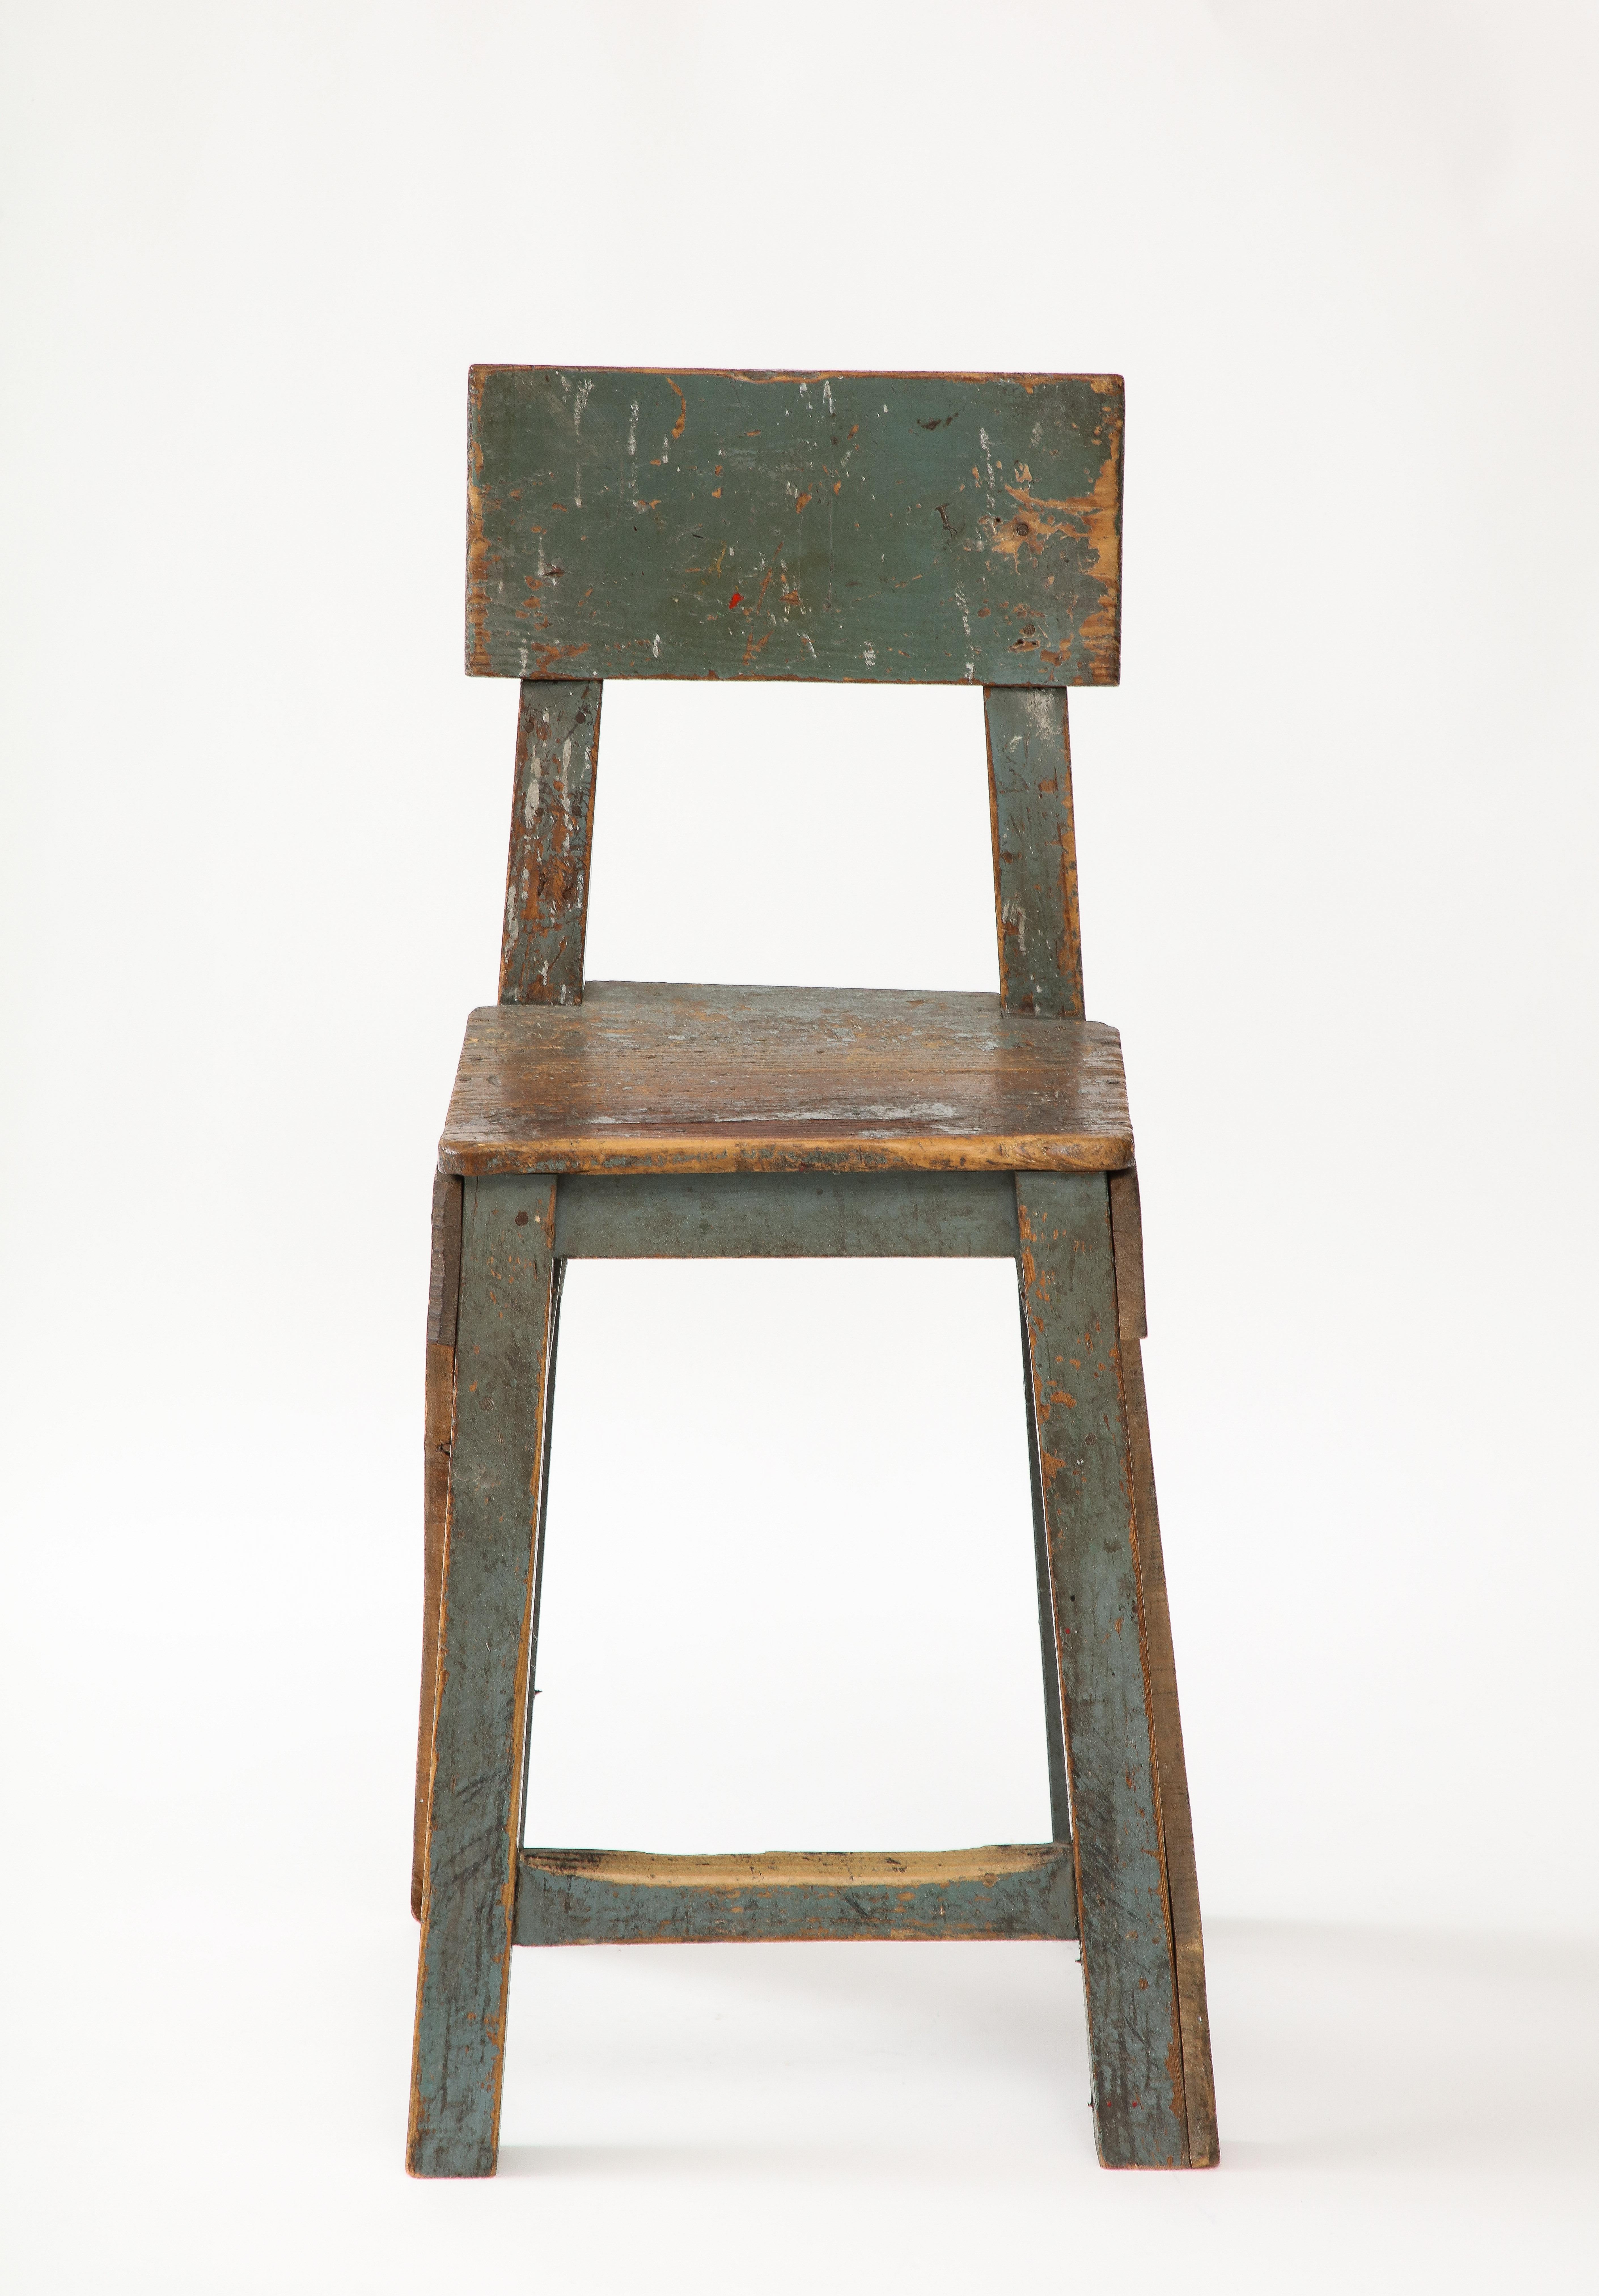 Chaise d'artiste primitive française, c. 1950
Bois, émail, bleu/vert/gris  Lettres rouges